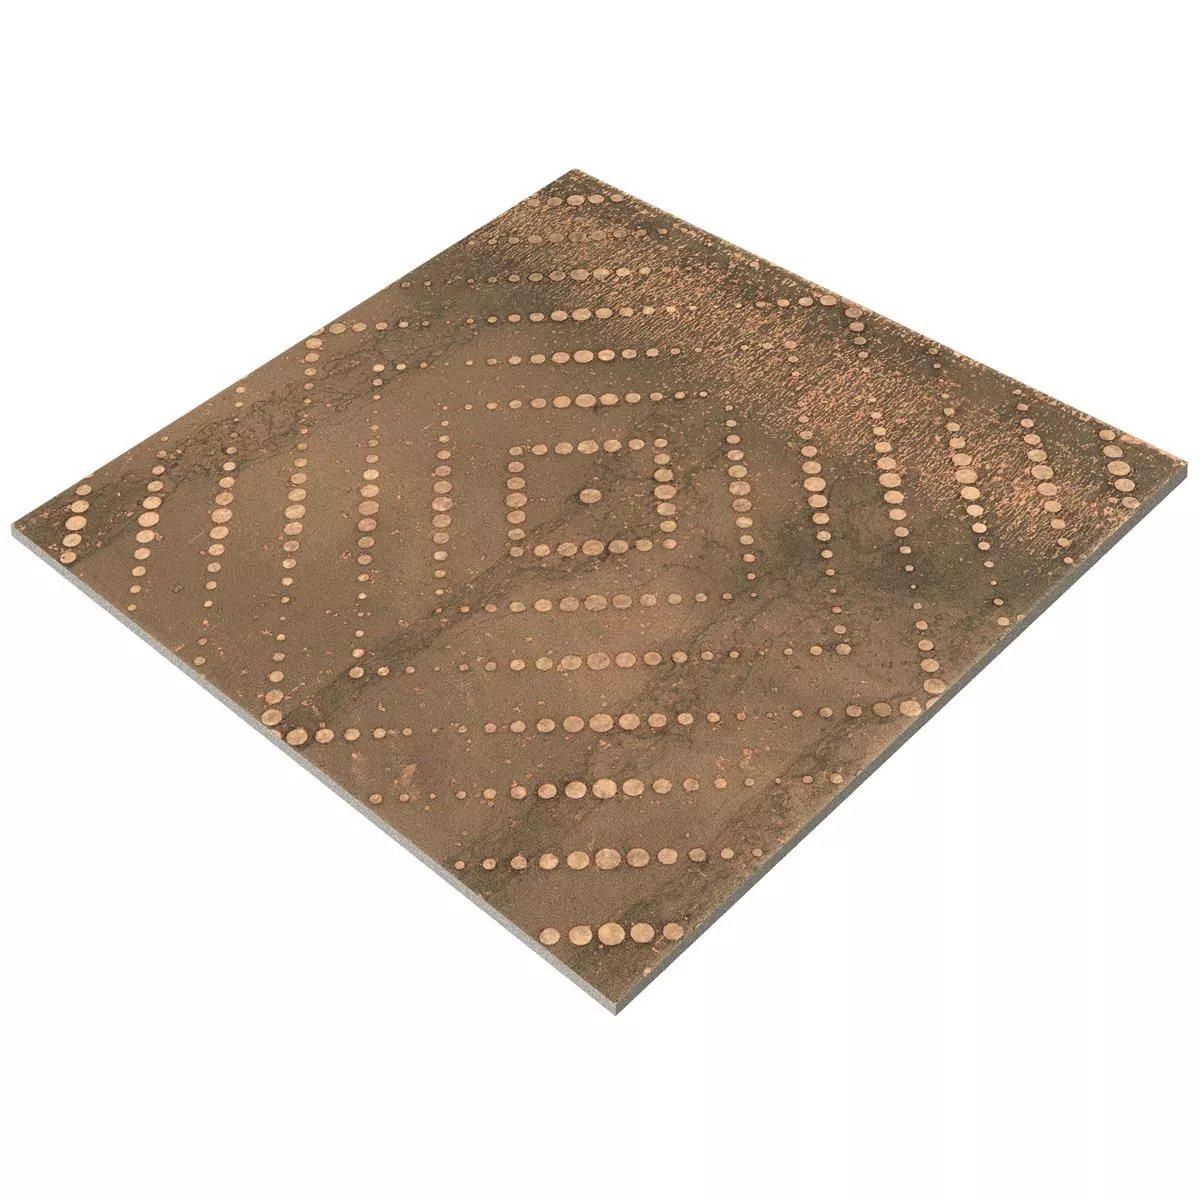 Πλακάκια Δαπέδου Chicago Μεταλλική Εμφάνιση Μπρούντζος R9 - 18,5x18,5cm - 3